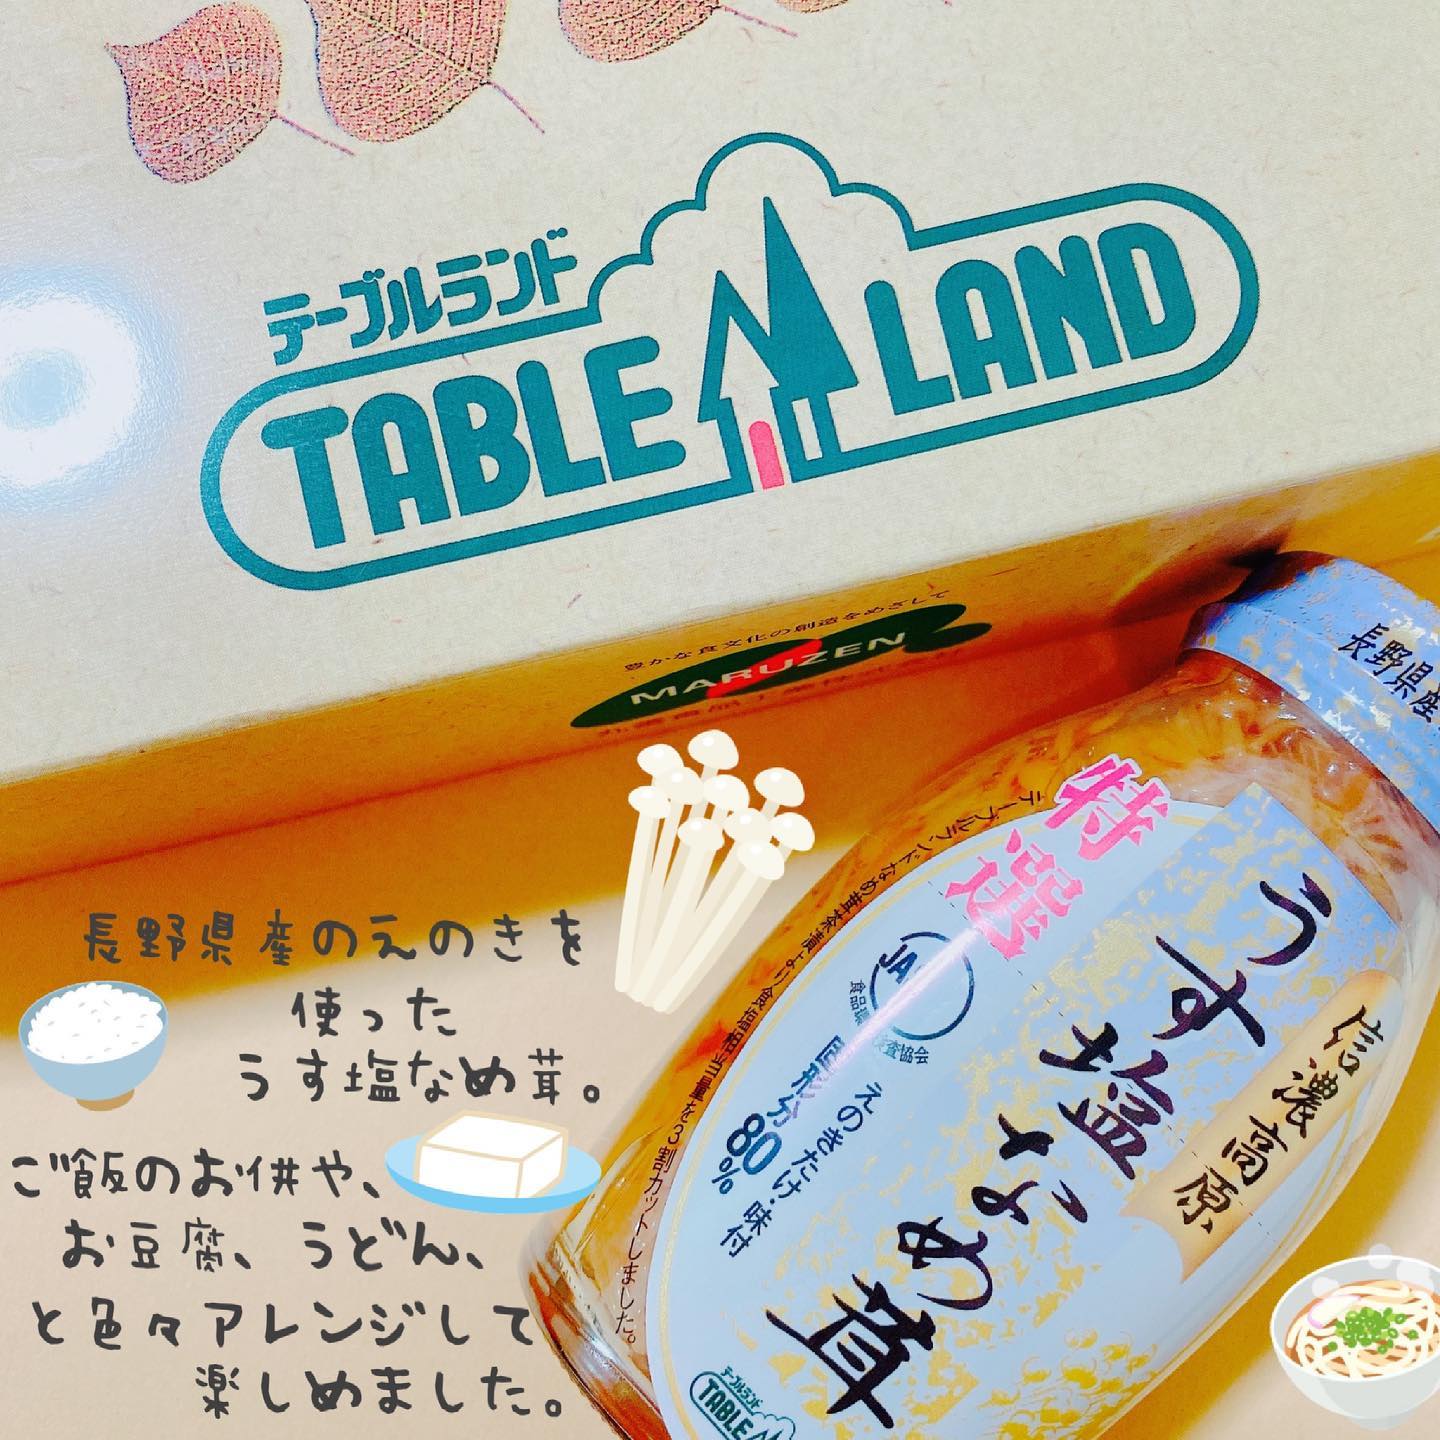 口コミ投稿：テーブルランドのうす塩なめ茸を食べてみました\( ¨̮ )/長野県産のなめ茸を使ってい…